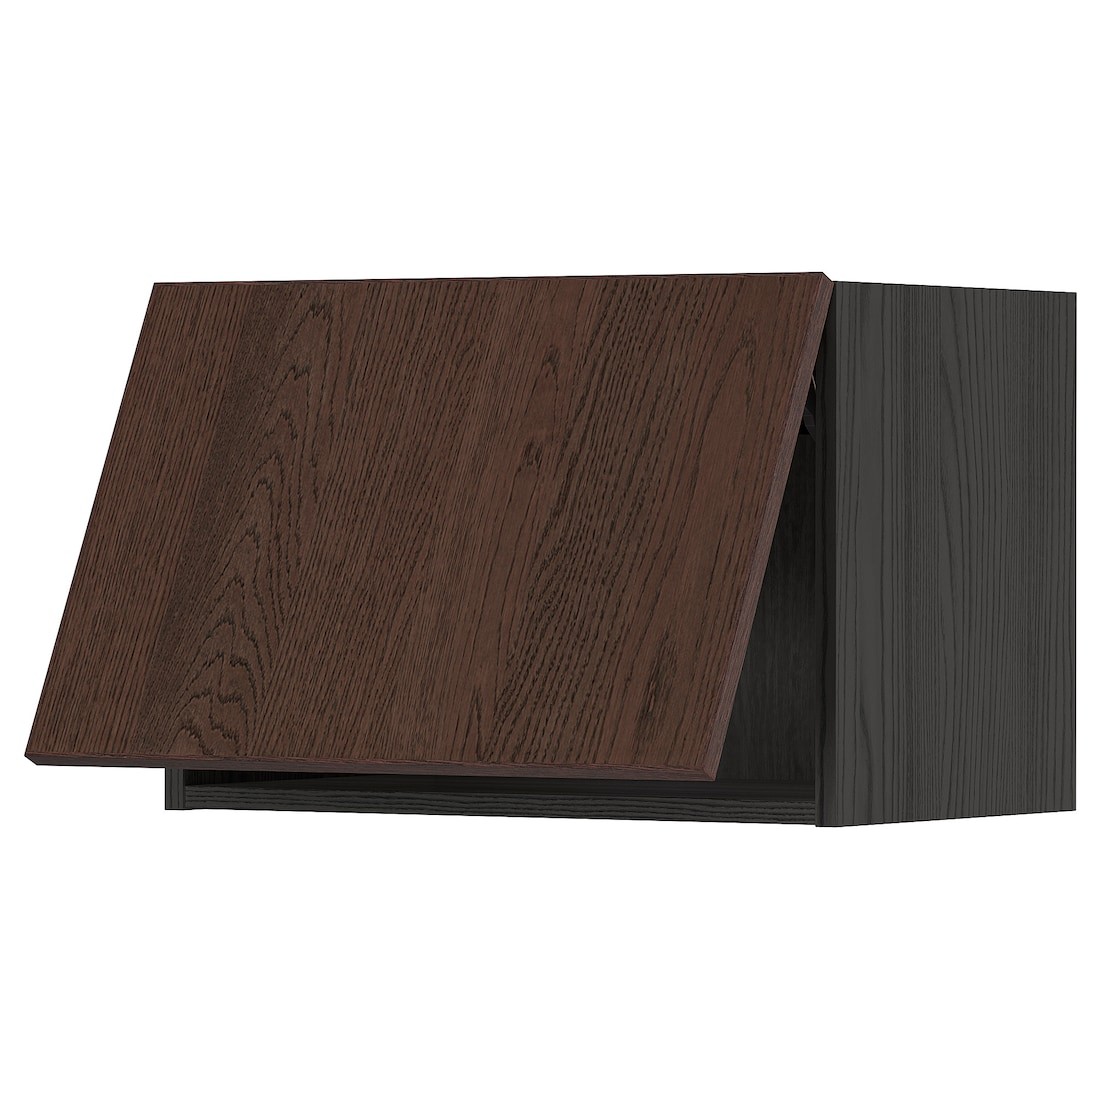 METOD МЕТОД Навесной горизонтальный шкаф, черный / Sinarp коричневый, 60x40 см